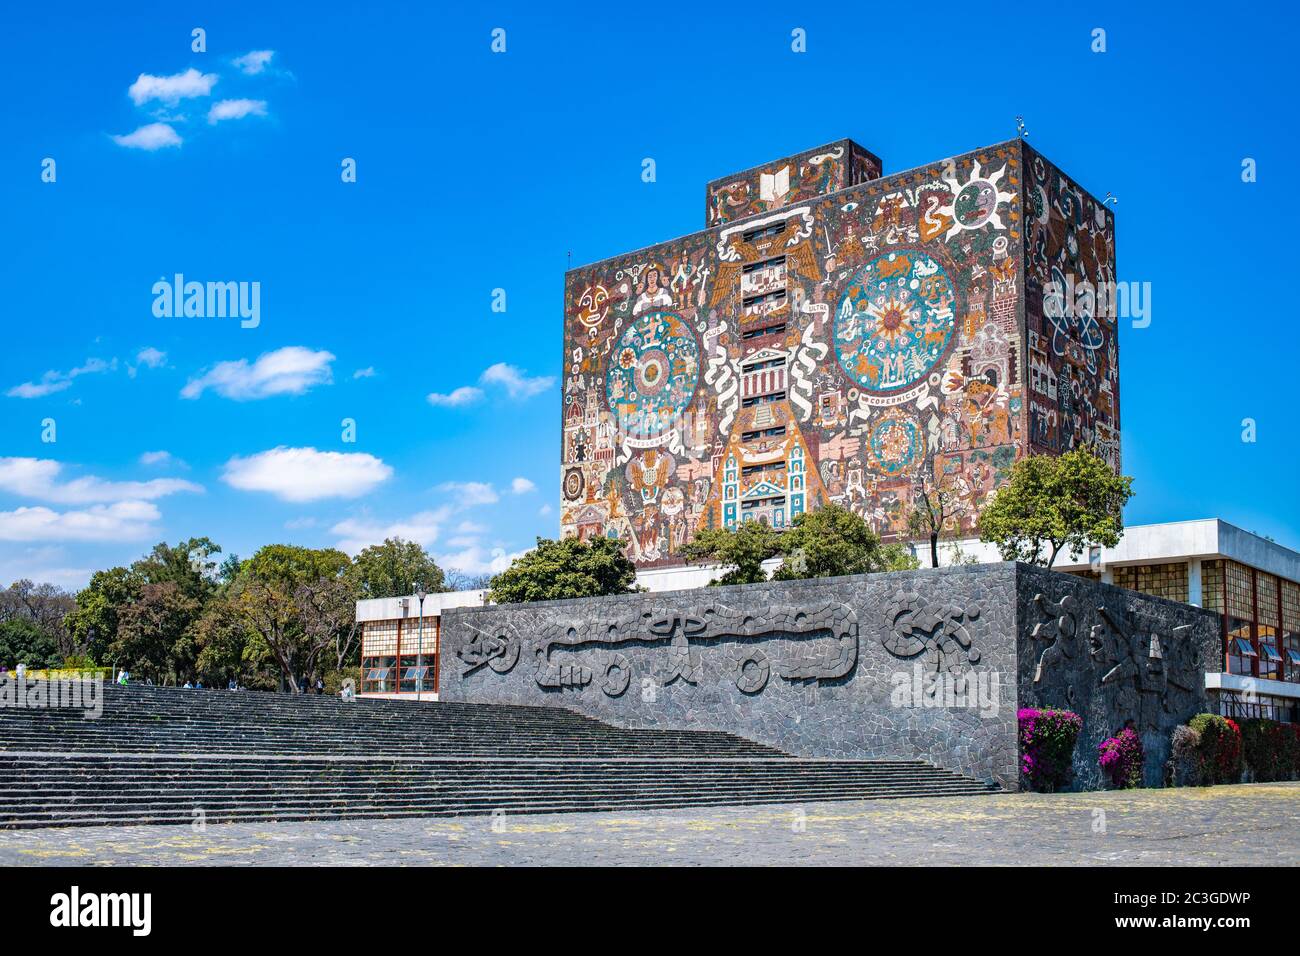 Mexico, Mexique - 21 février 2020 : édifice emblématique de la Bibliothèque centrale de l'Université nationale autonome du Mexique, U Banque D'Images